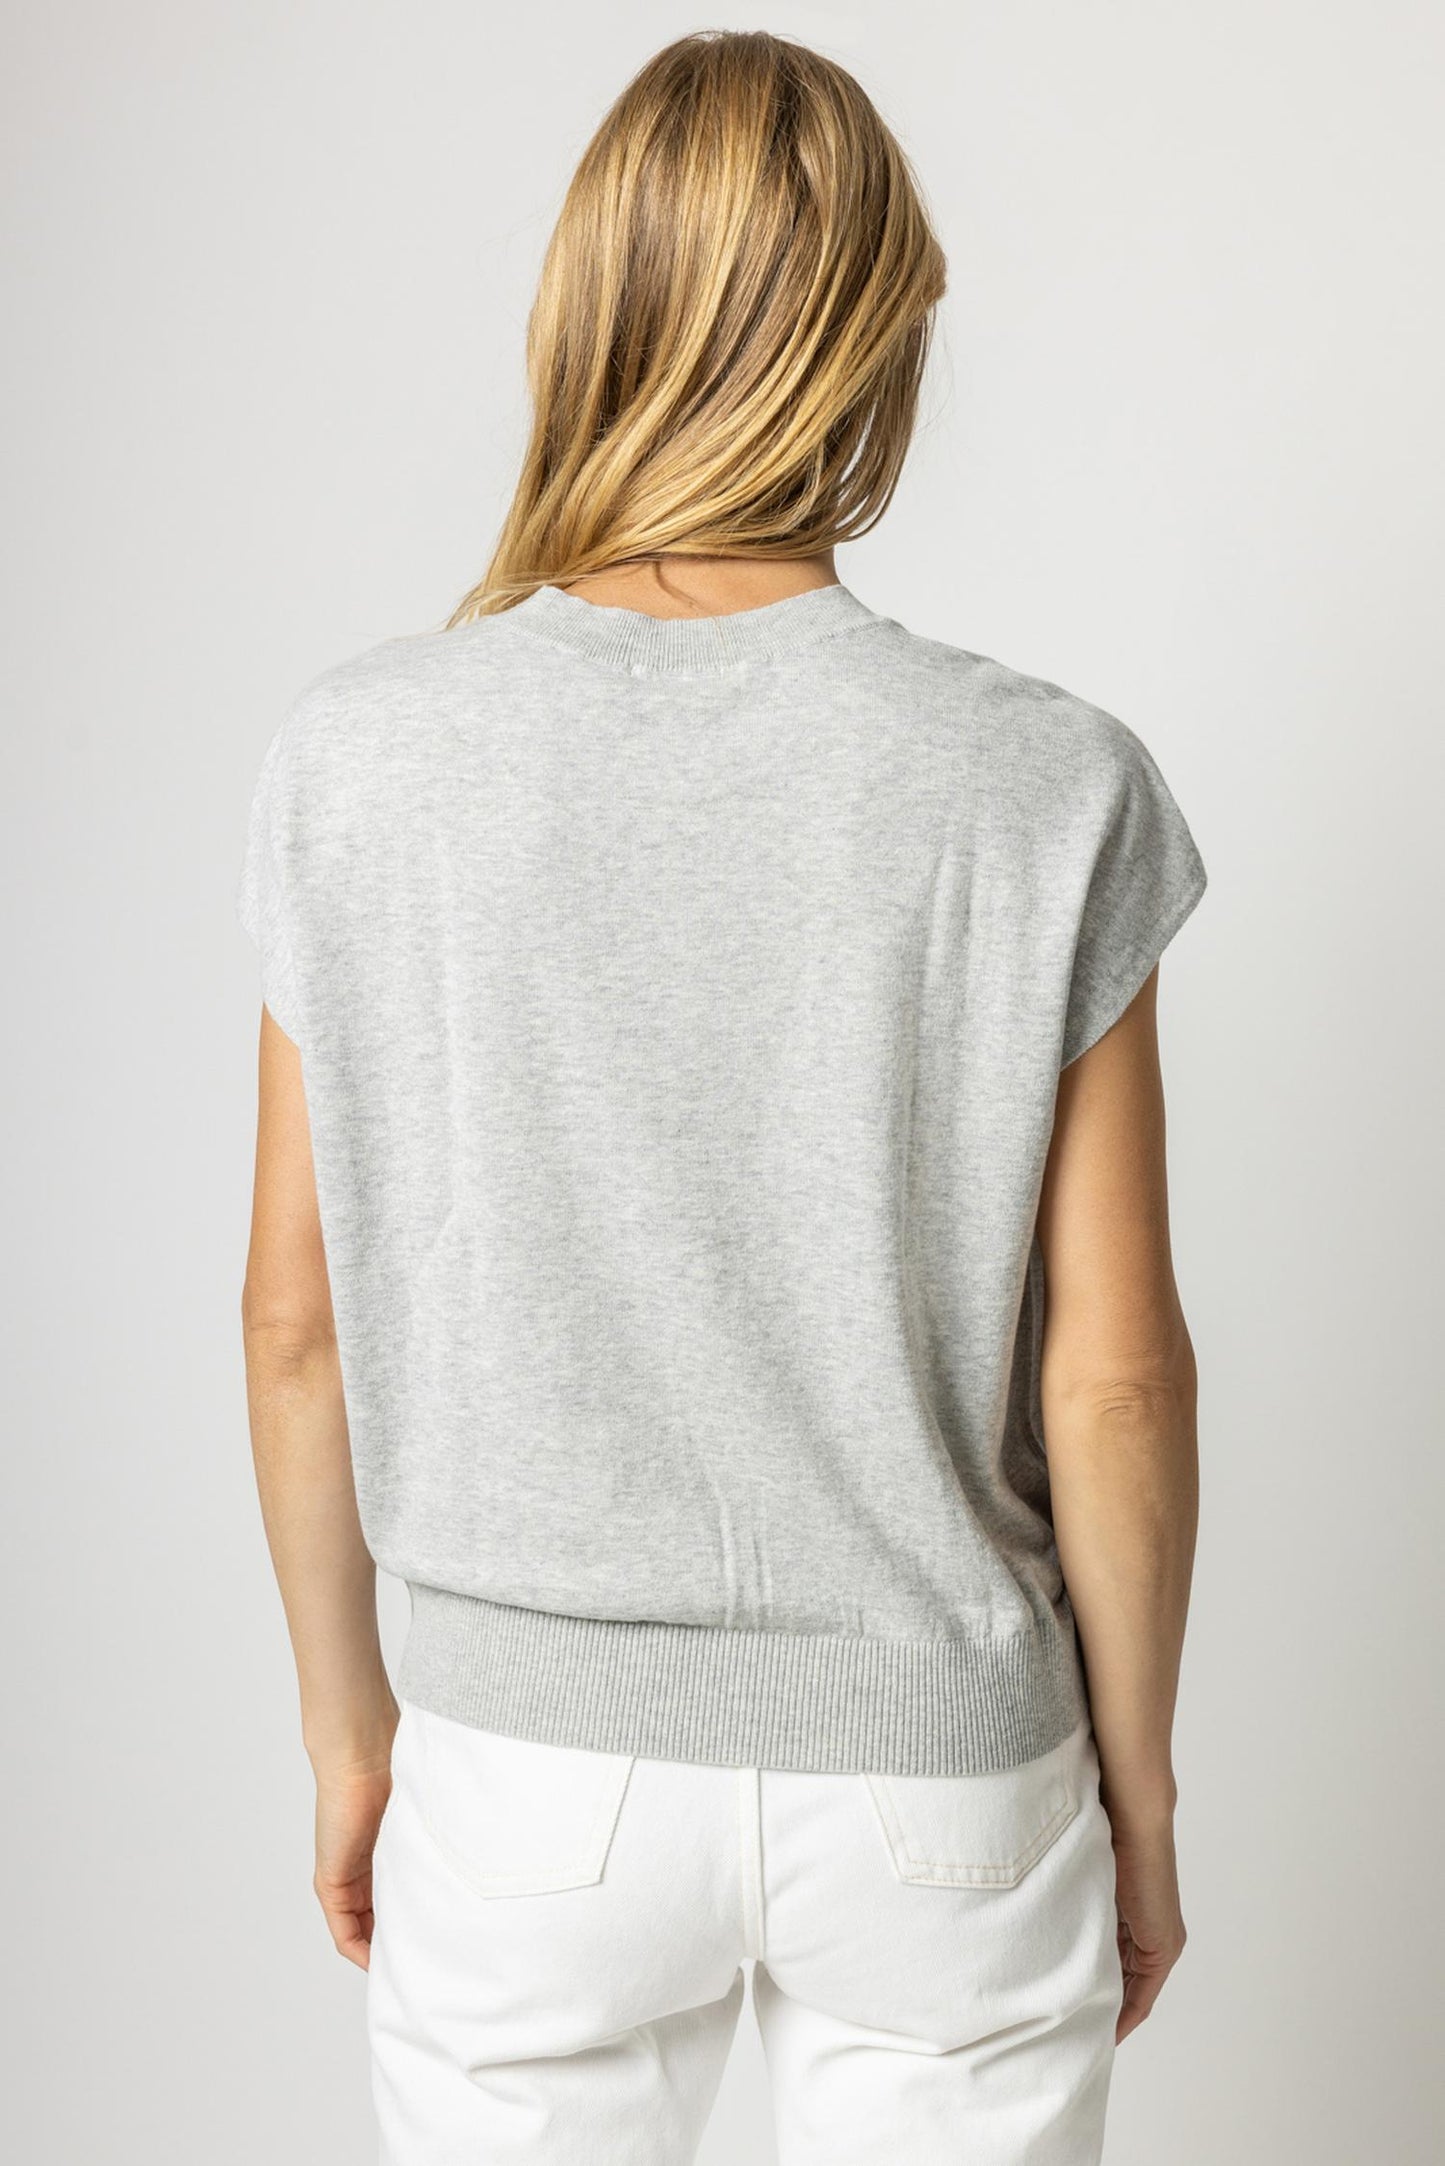 
                  
                    Lilla P | V-neck Pullover sweater
                  
                